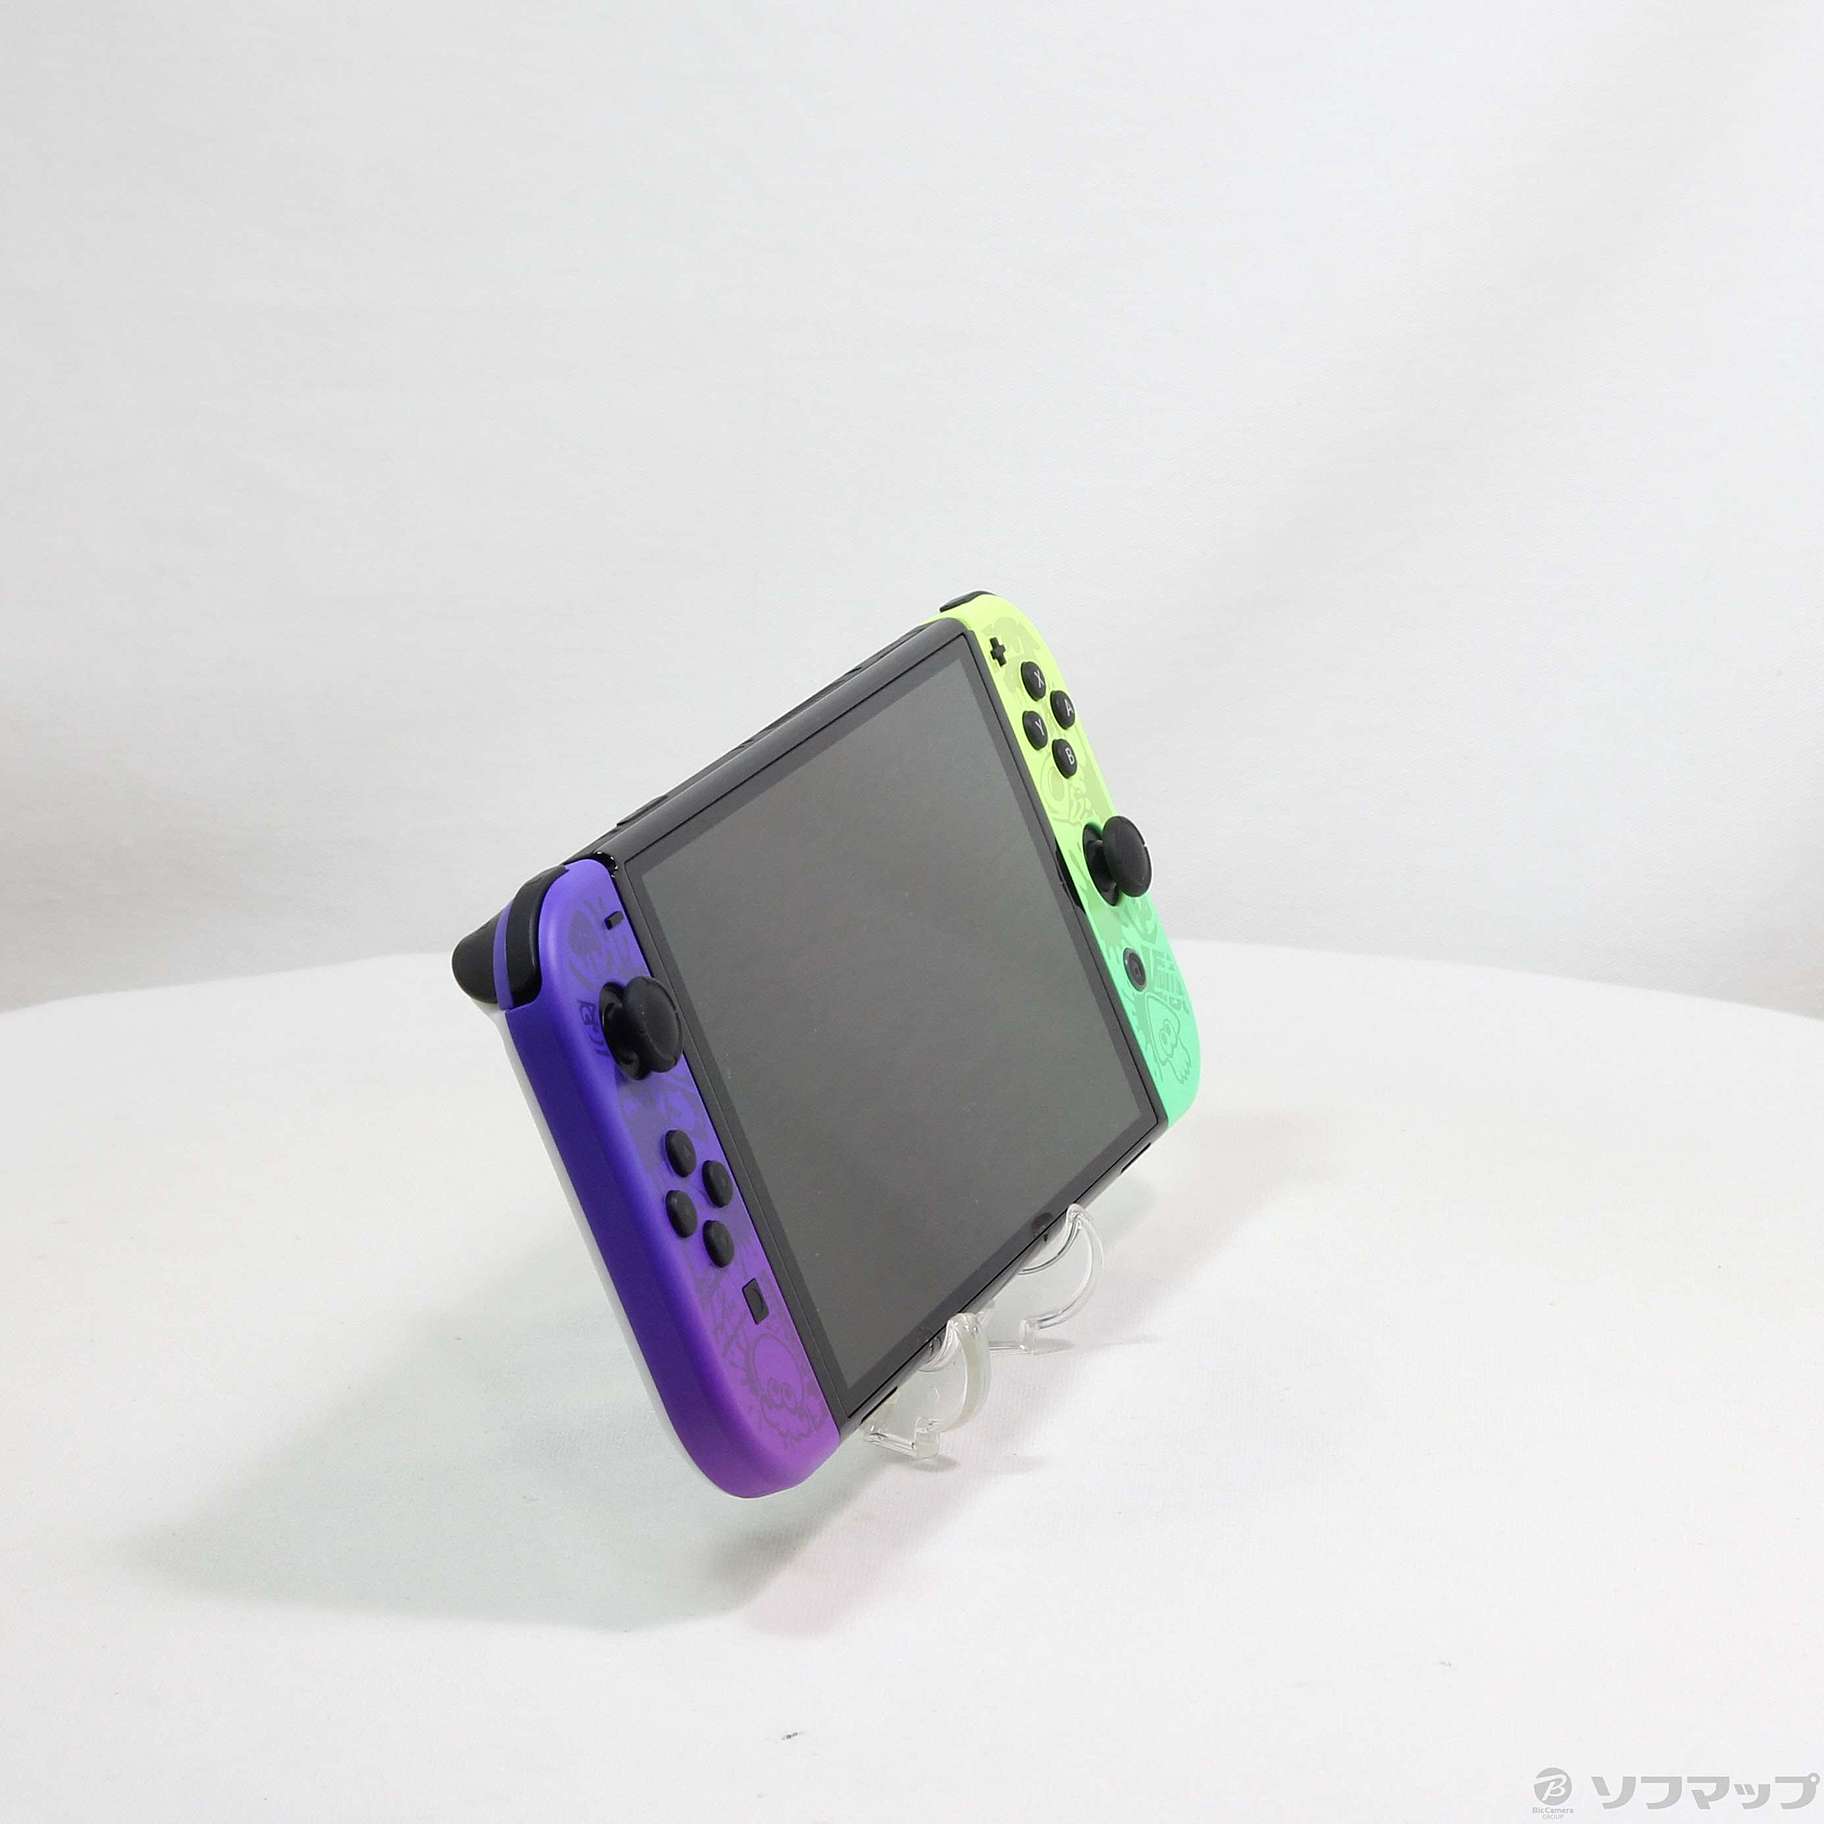 Nintendo Switch 有機ELモデル スプラトゥーン3エディション